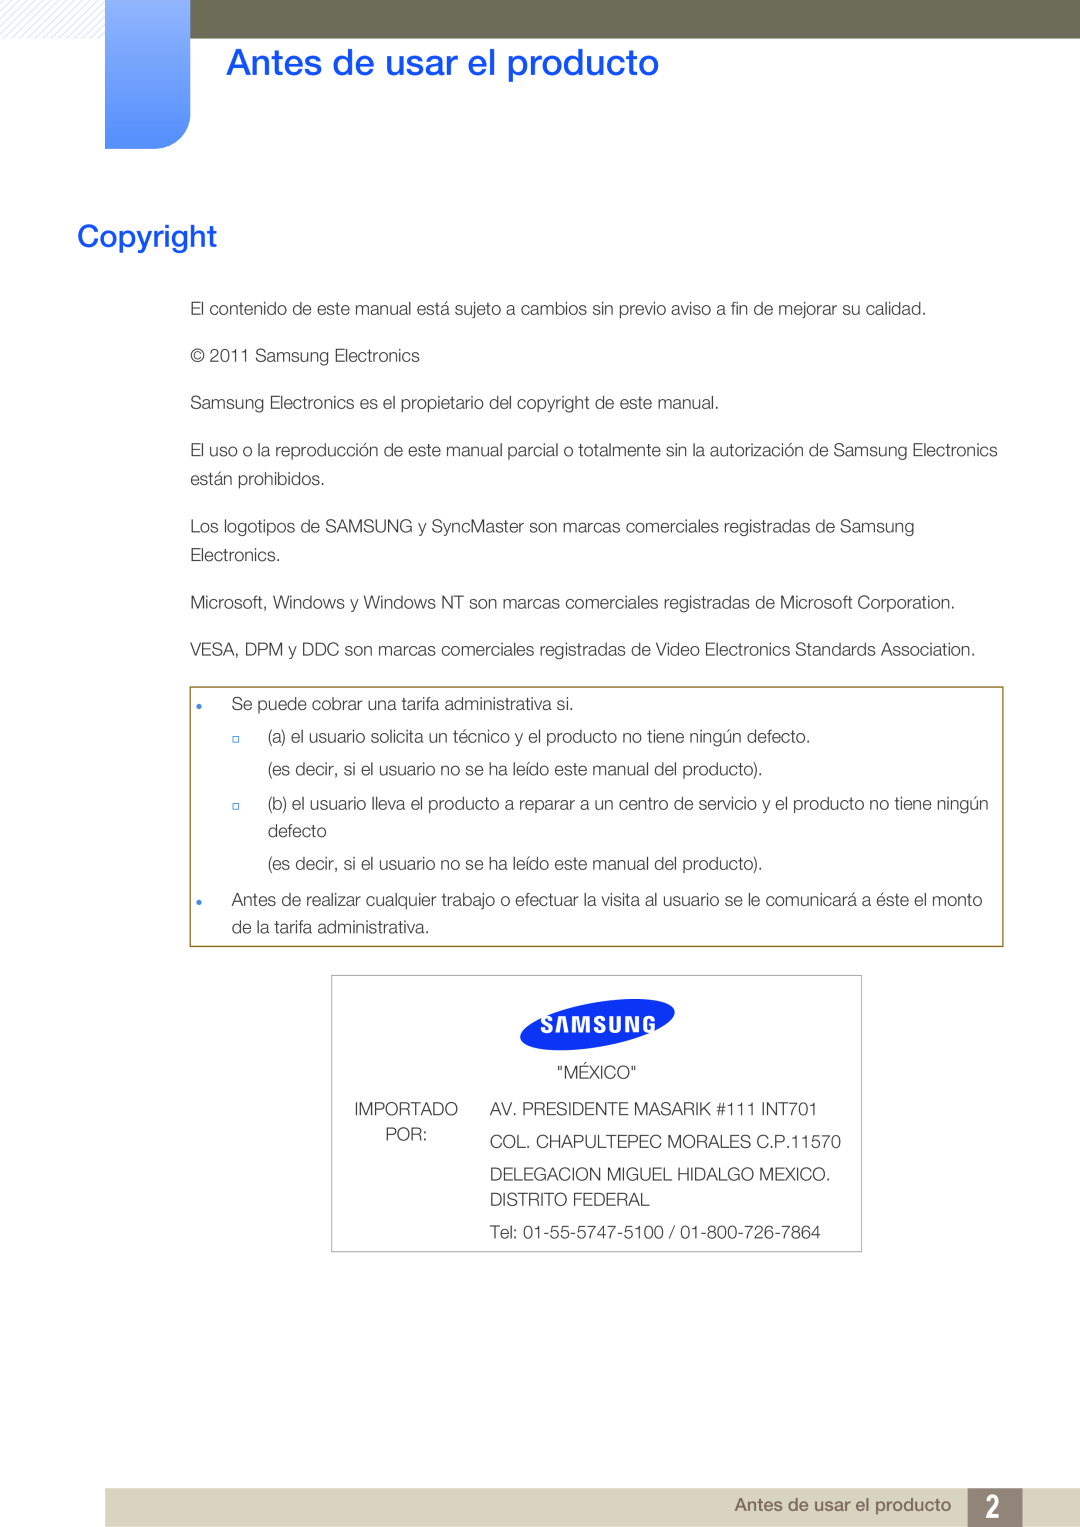 Samsung LF22TSCTBAN/EN, LF19TSCTBAN/EN, LF24TSCTBAN/EN manual Antes de usar el producto, Copyright 